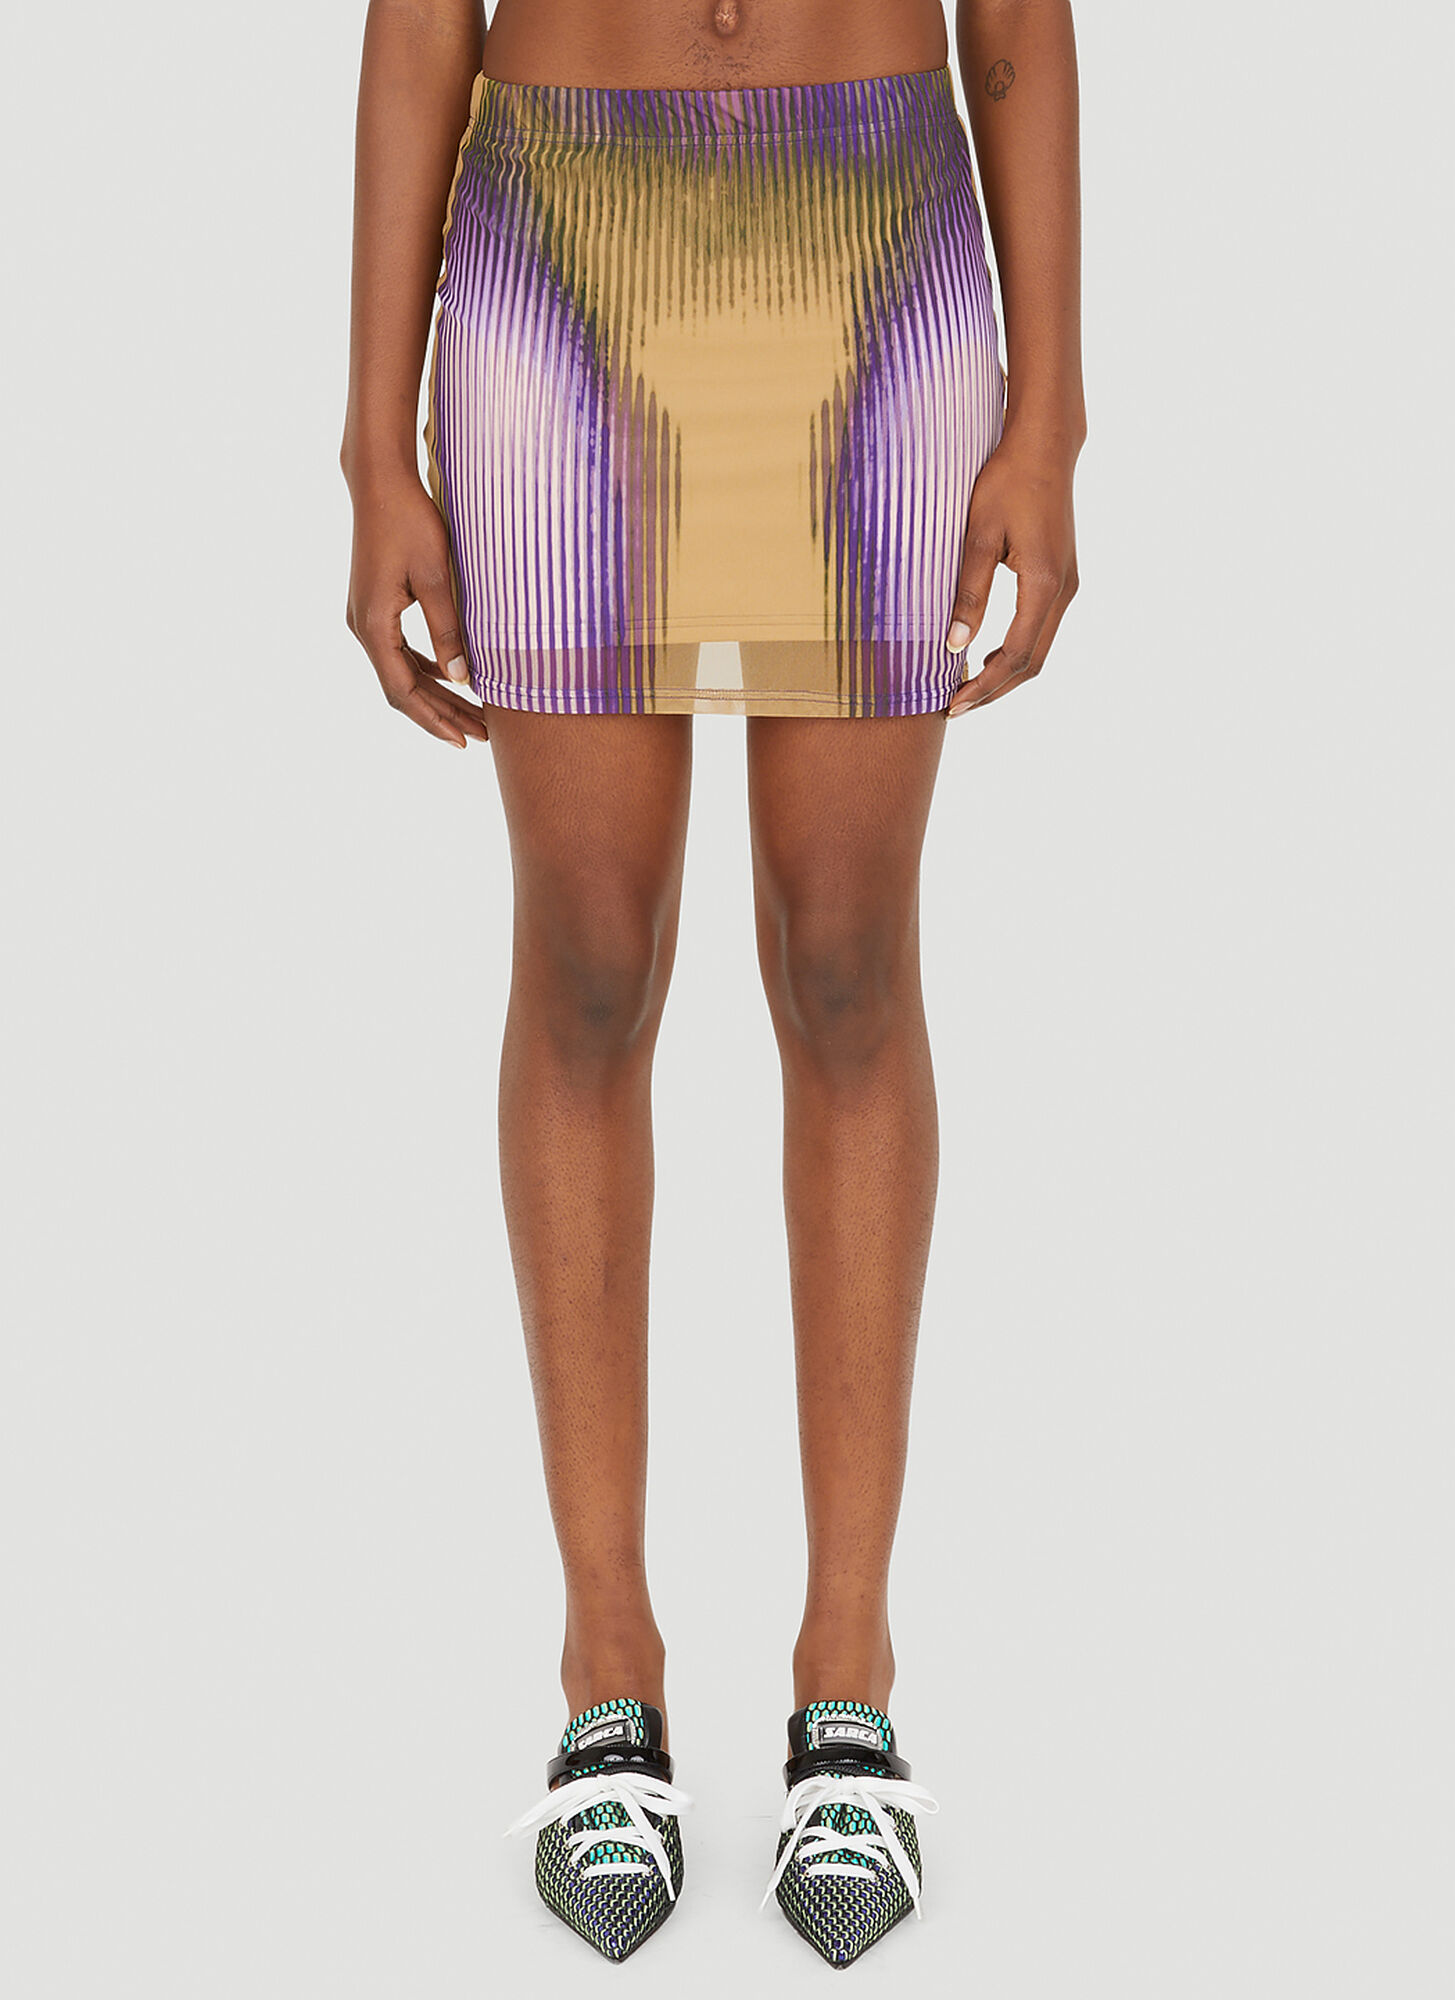 Y/project X Jean Paul Gaultier Body Morph Mini Skirt